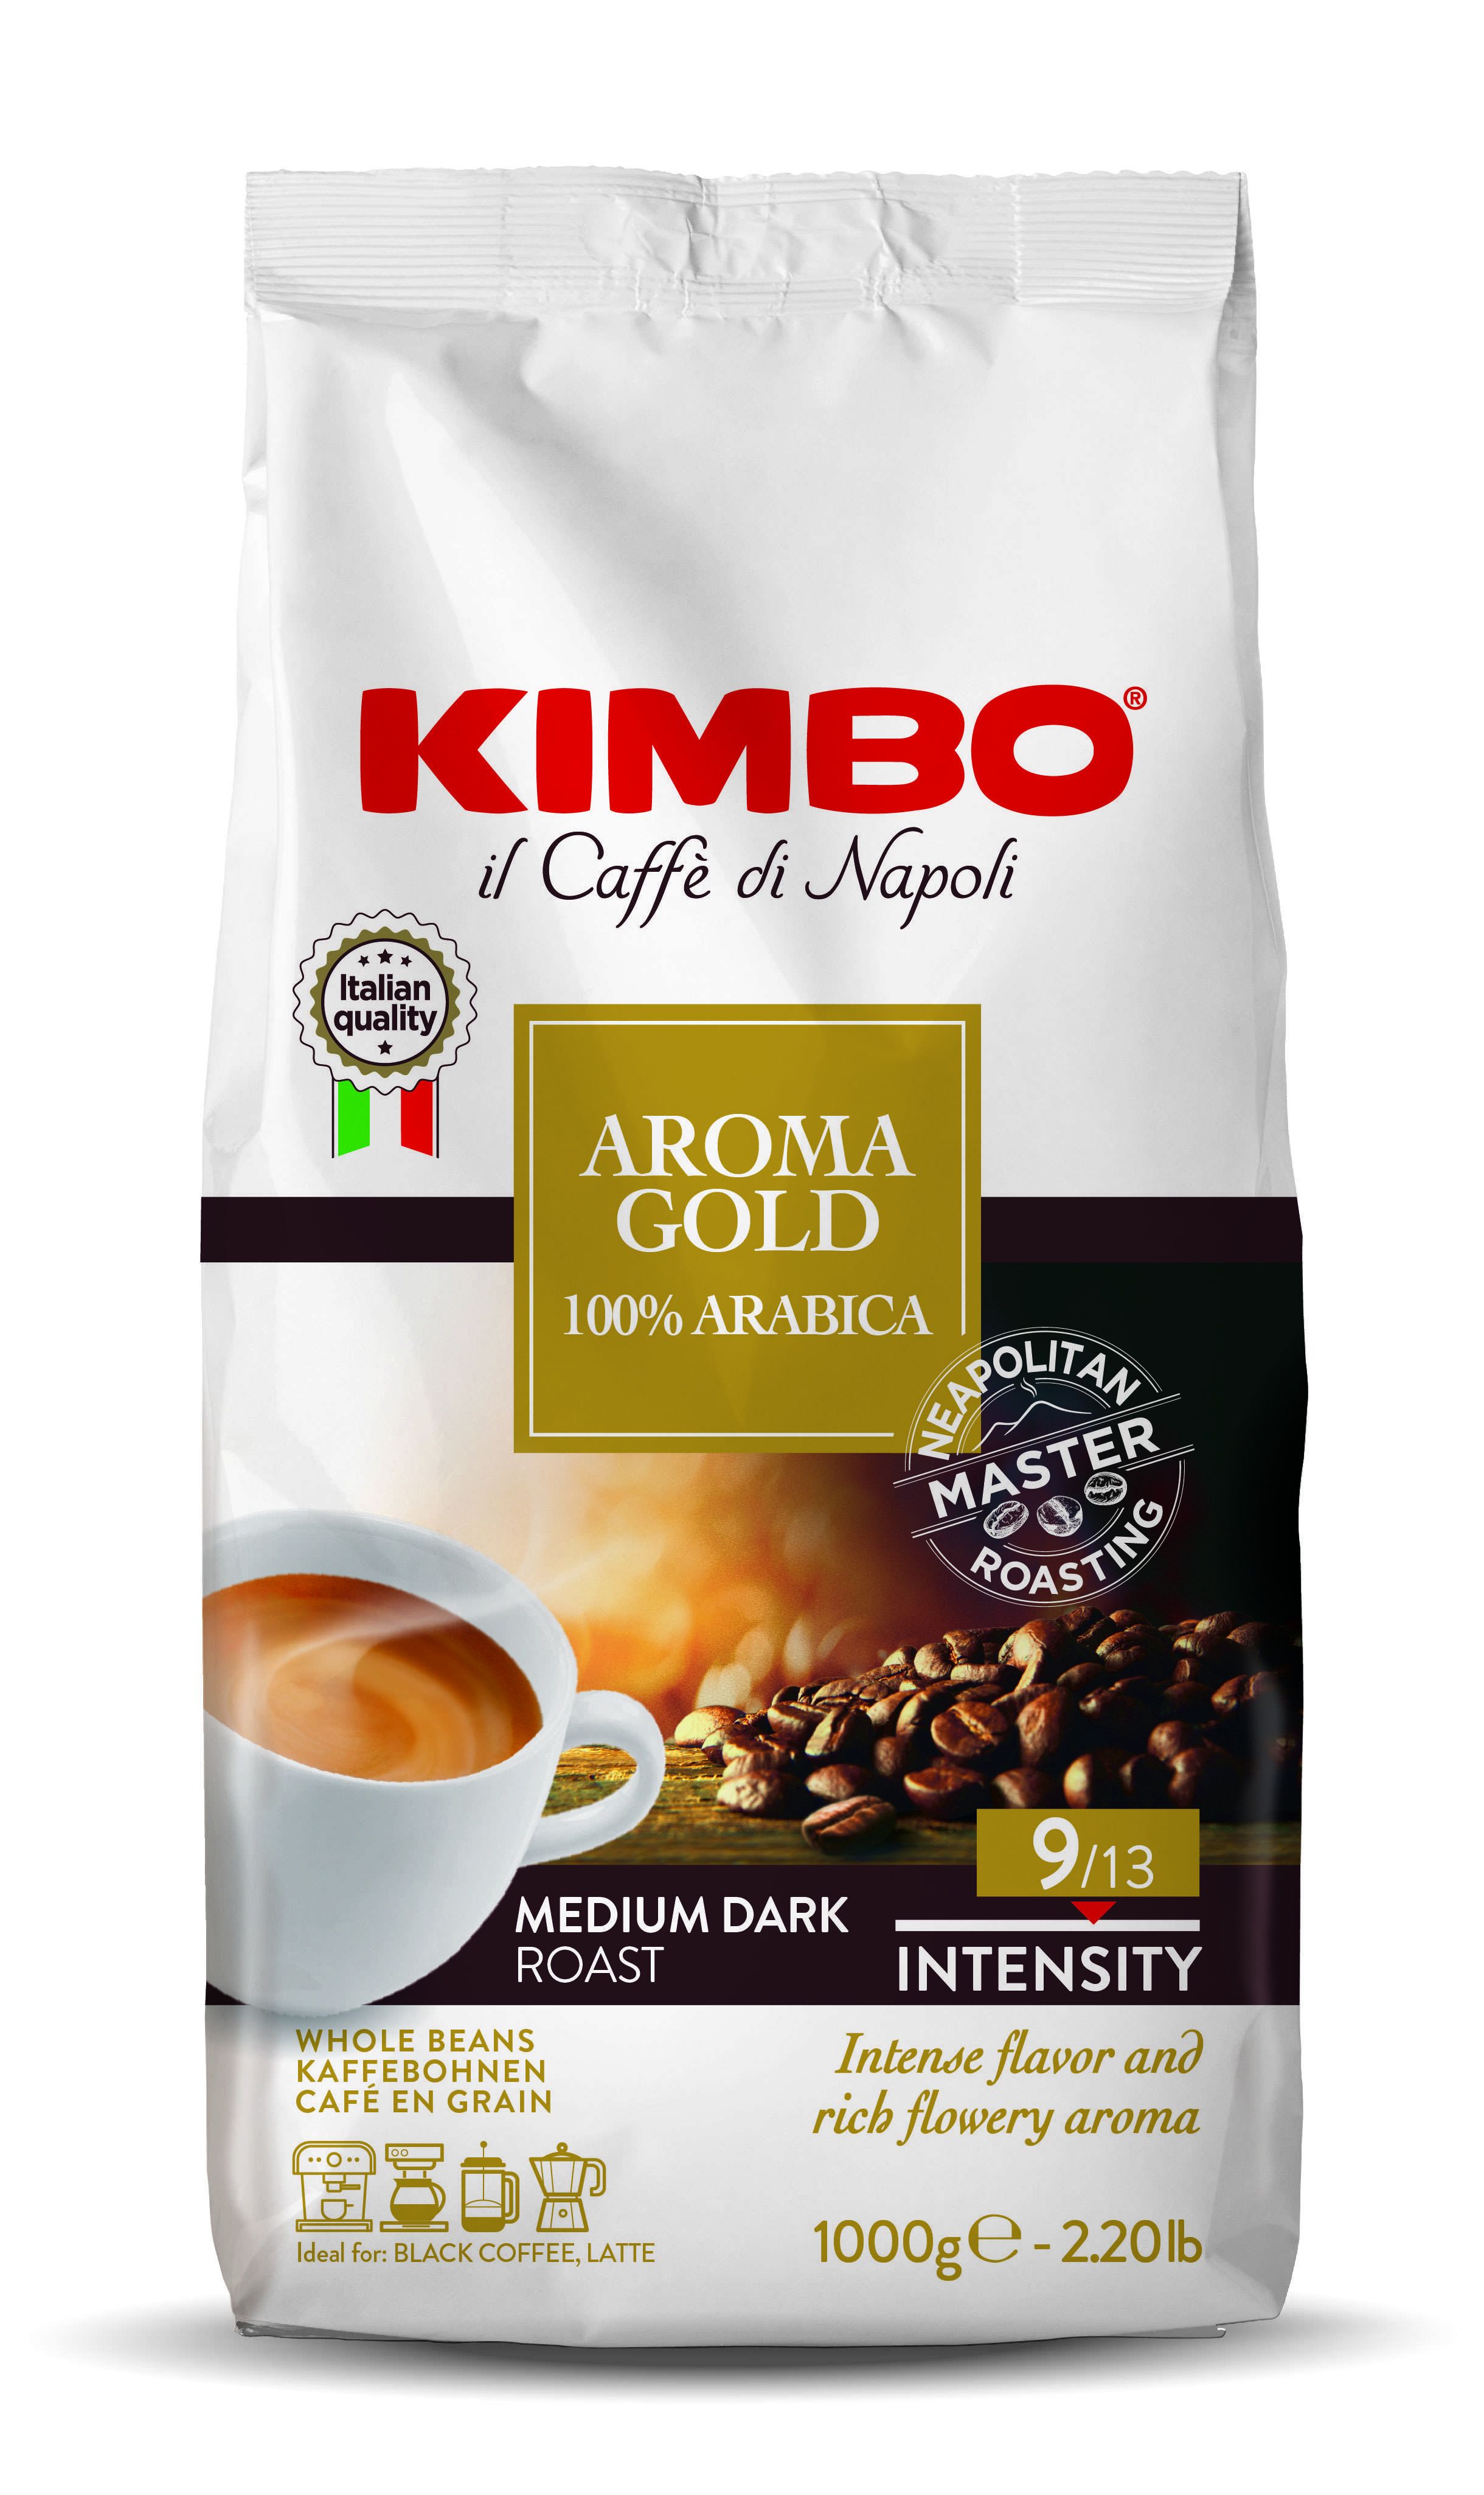 KIMBO S.p.A. Aroma Gold 100% Arabica ganze Kaffeebohnen1kg